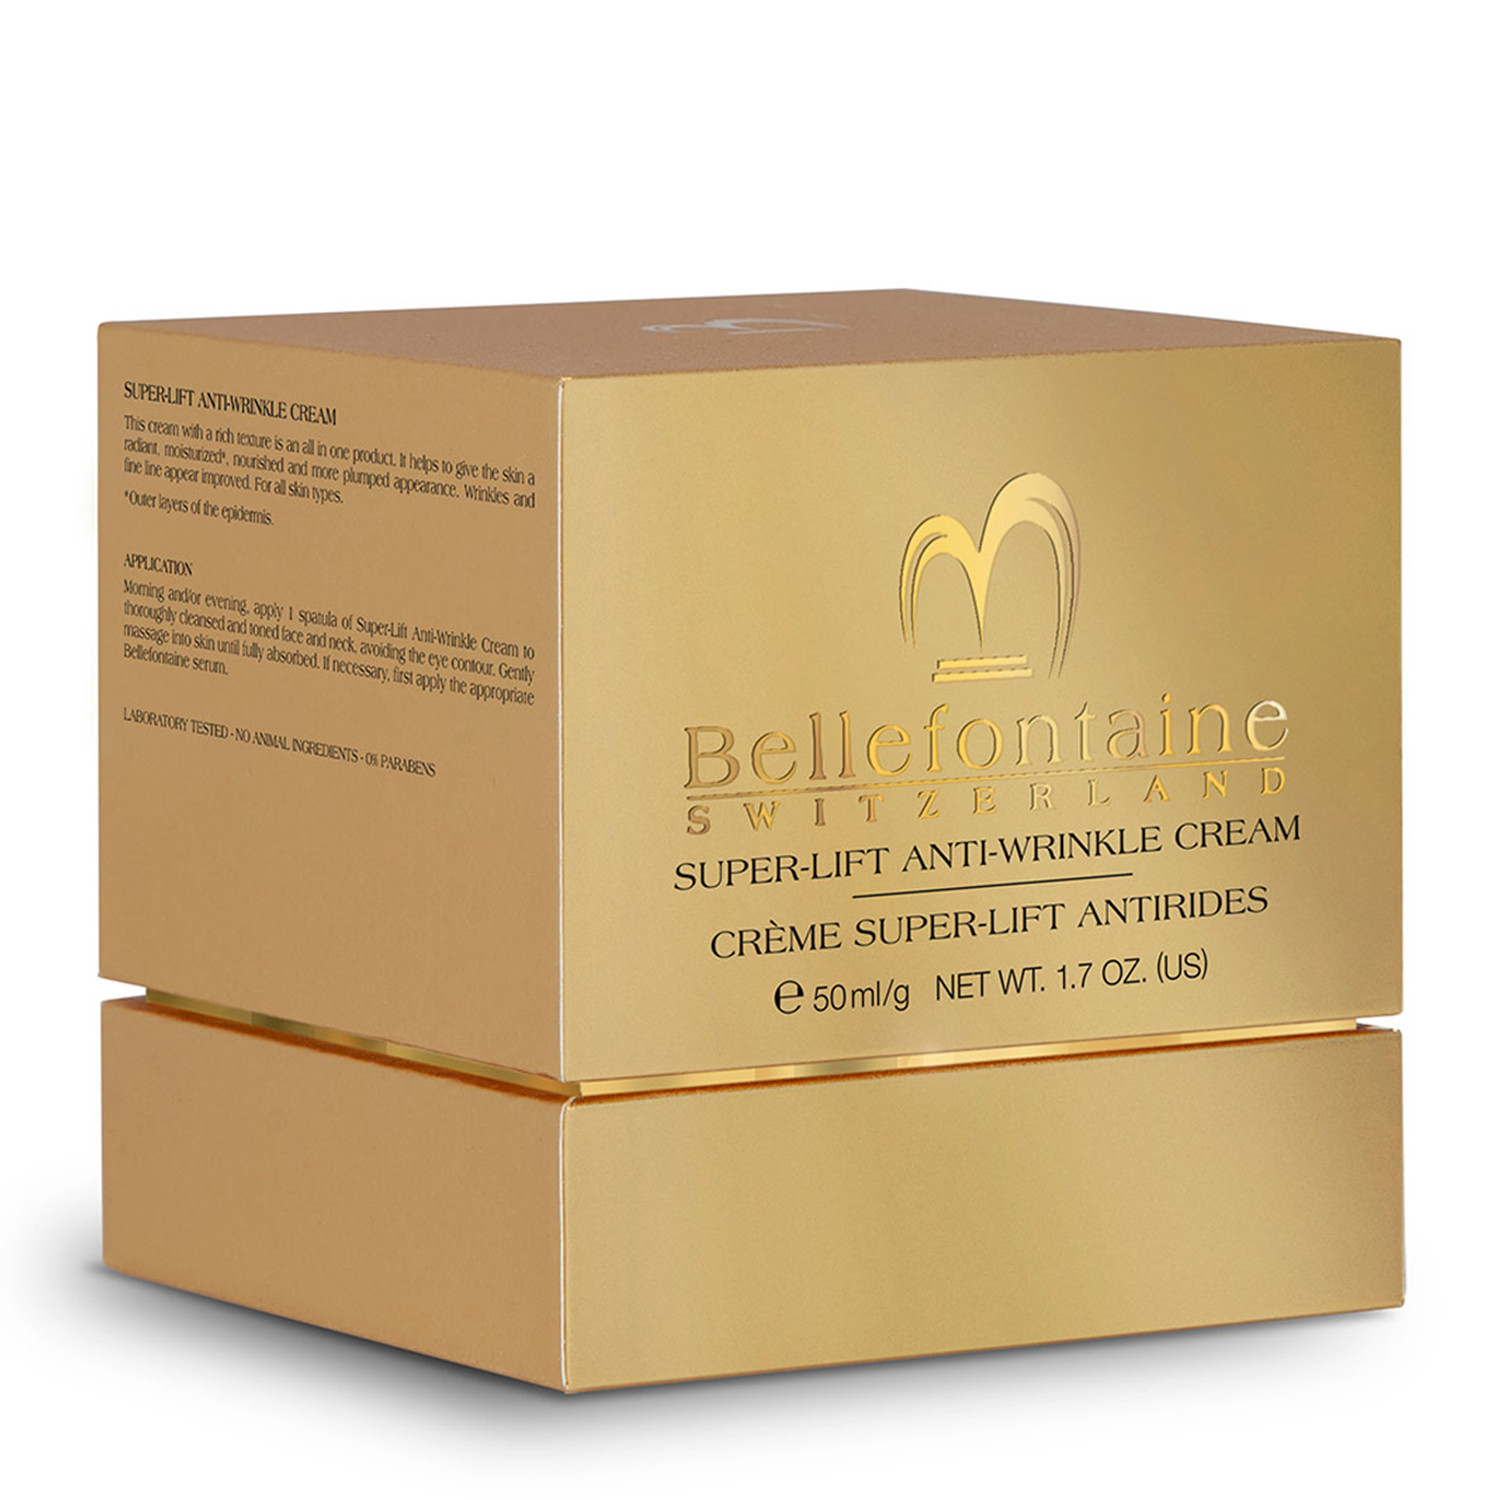 Крем против морщин Супер-лифтинг Bellefontaine Super-Lift Anti-Wrinkle Cream